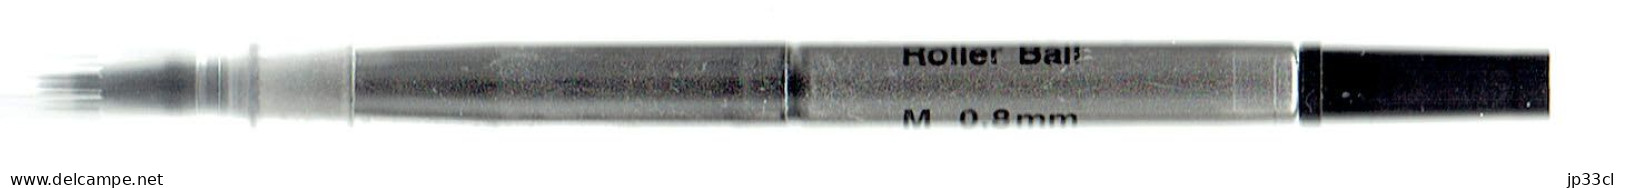 Roller Ball Parker M 0.8 Mm (Made In U.K.) - Schreibgerät